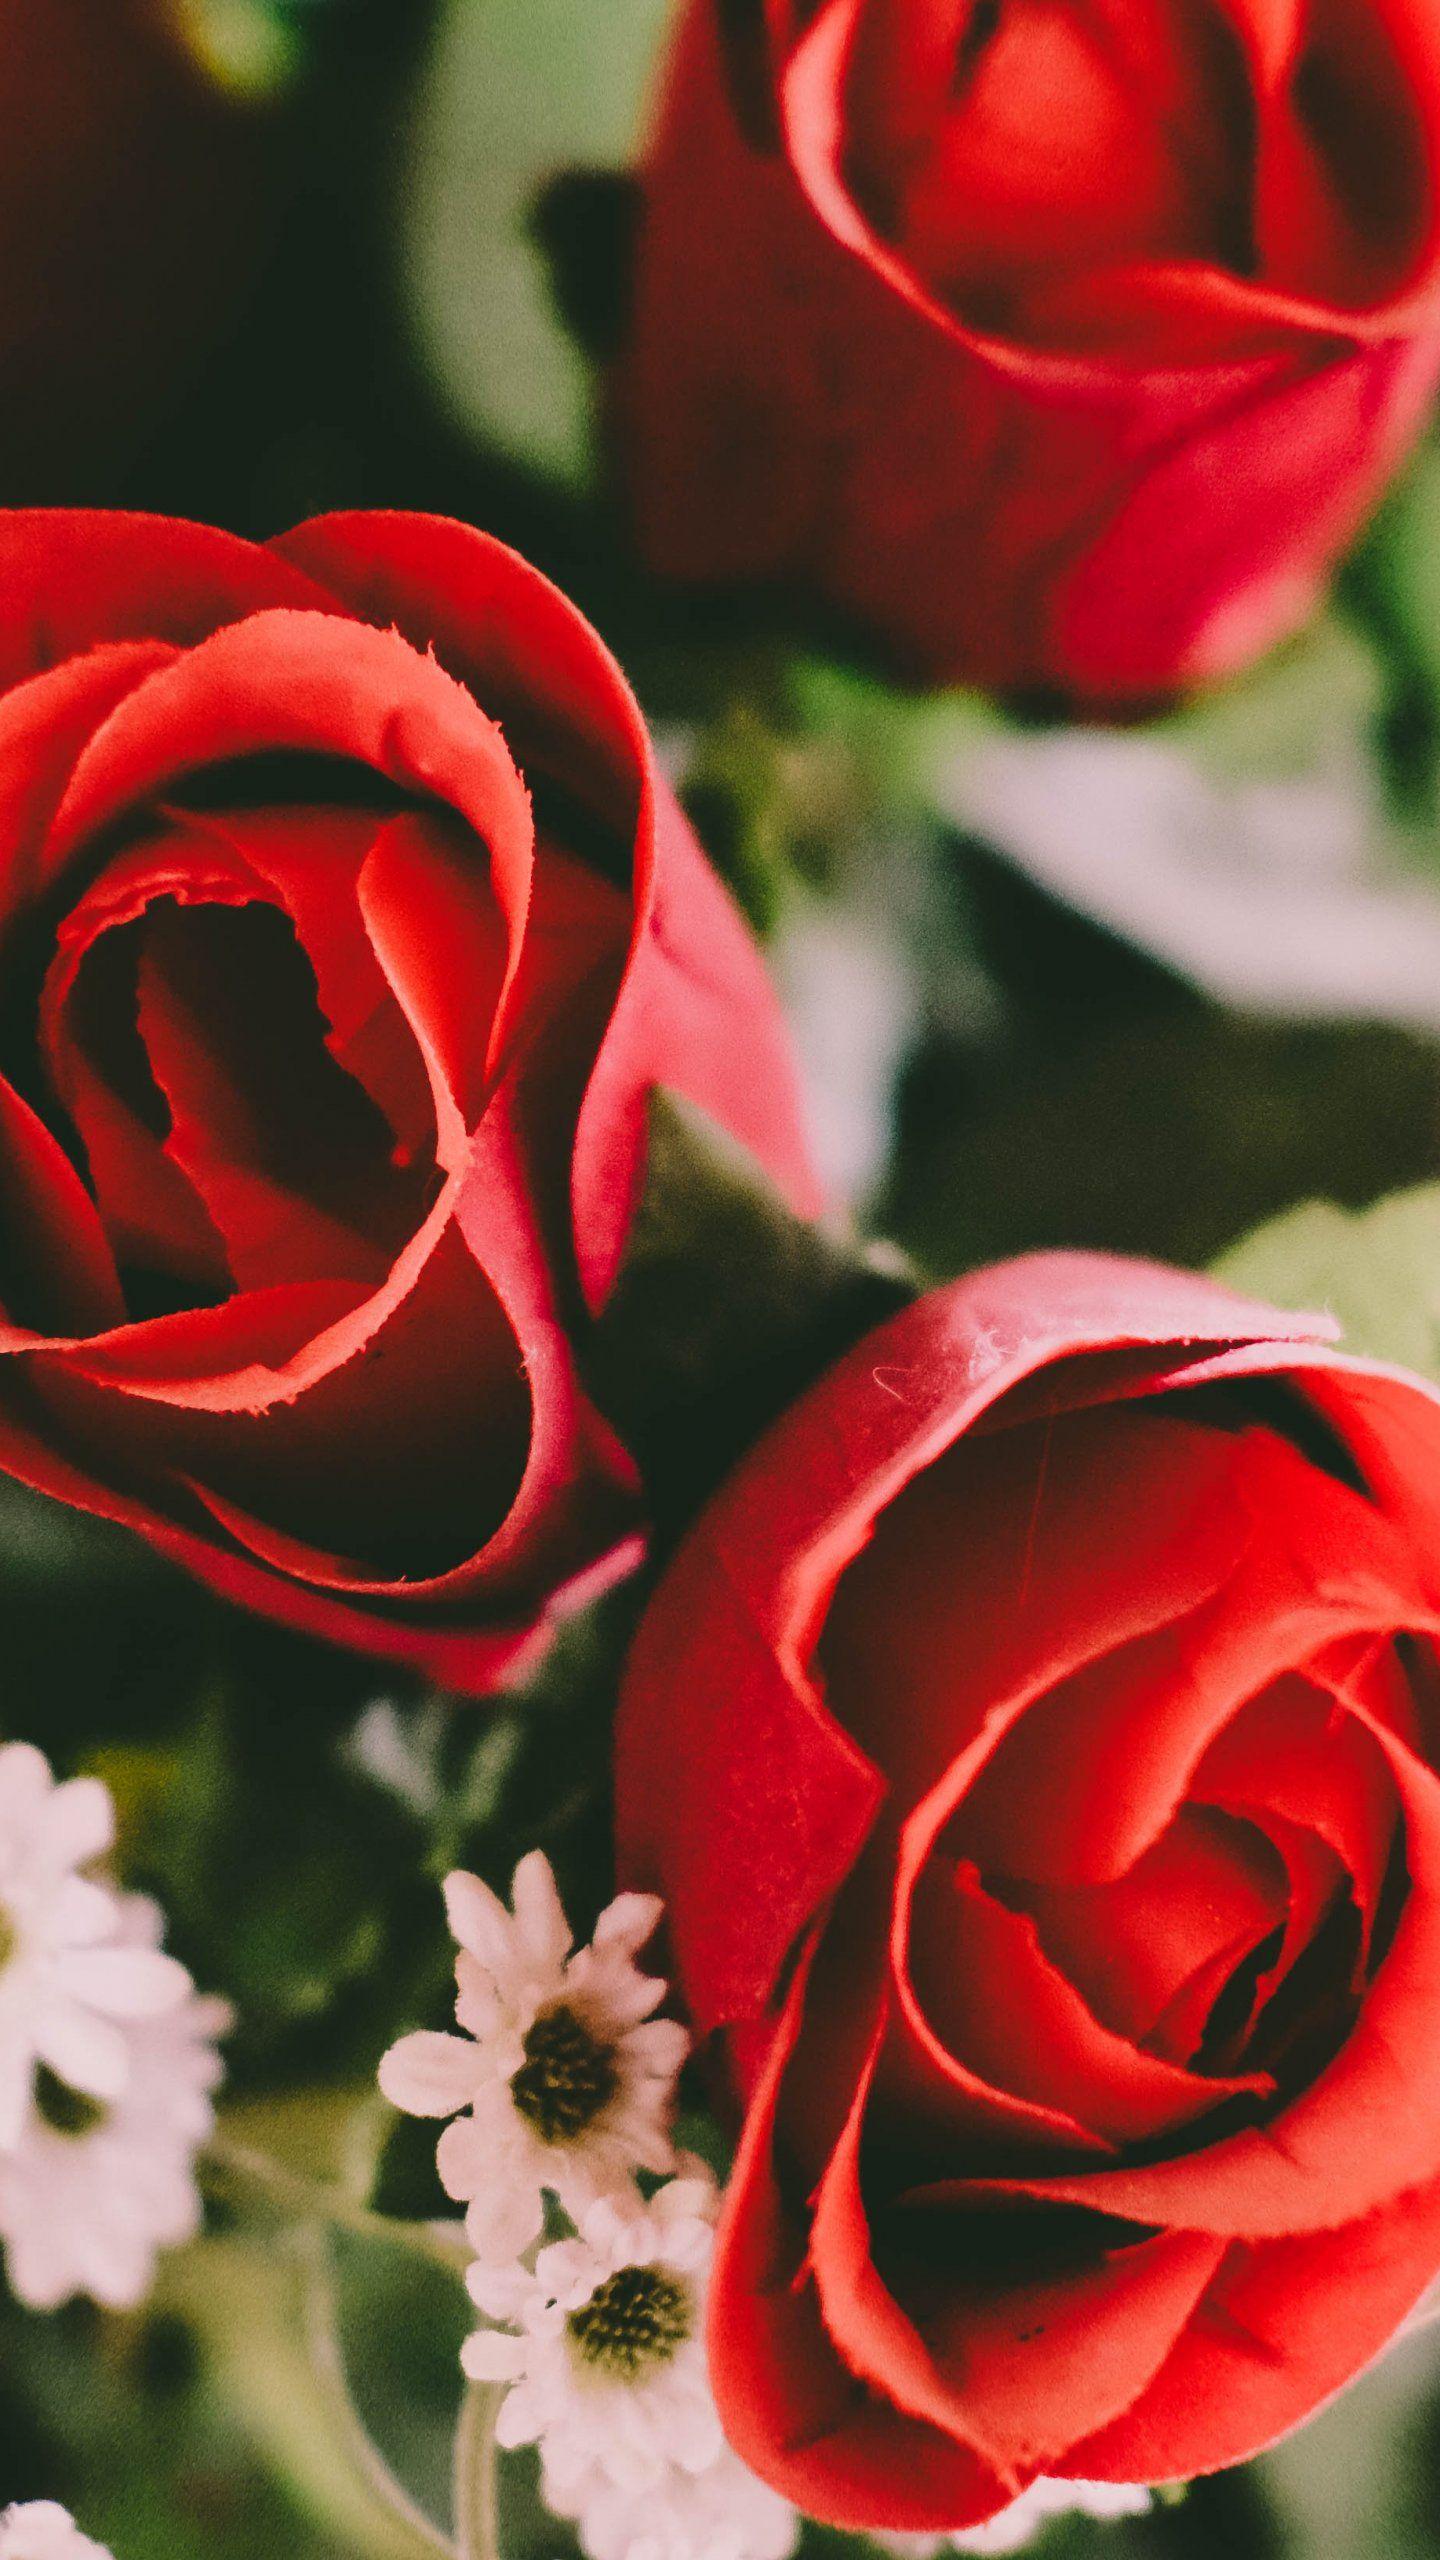 Red Roses Wallpaper, Android & Desktop Background. Red roses wallpaper, Flower wallpaper, Floral wallpaper desktop